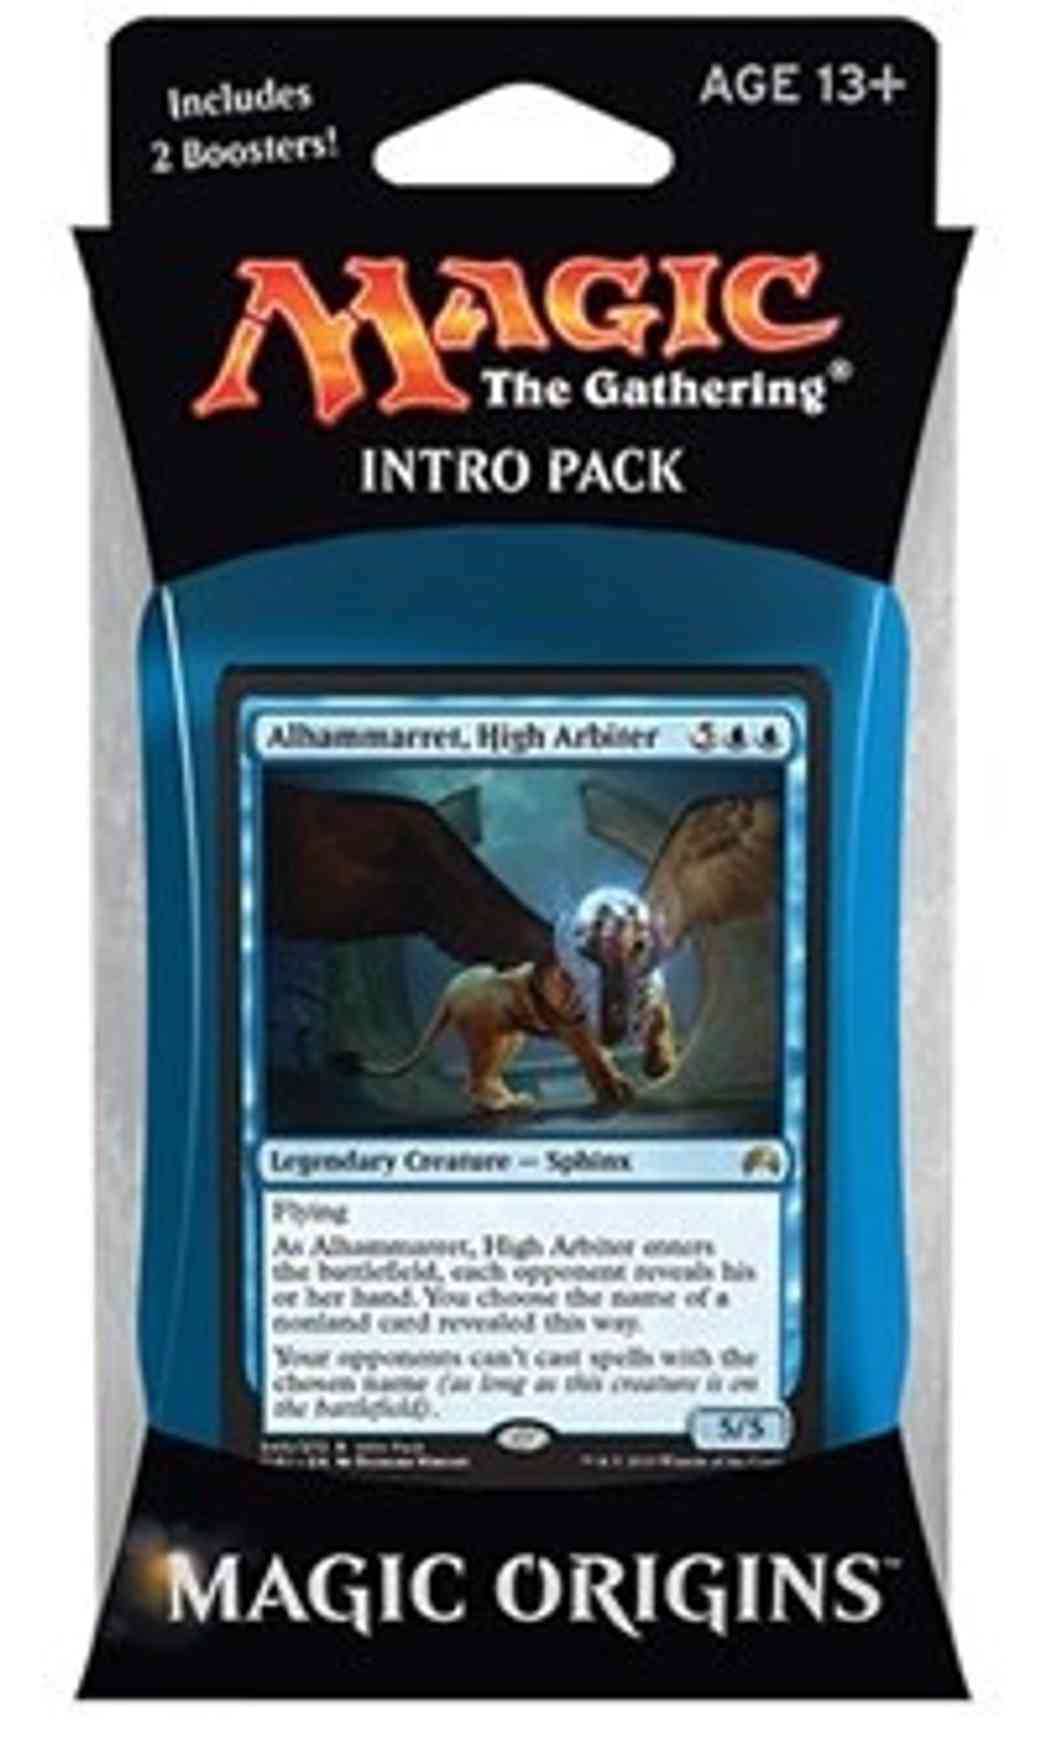 Magic Origins Intro Pack - Blue magic card front